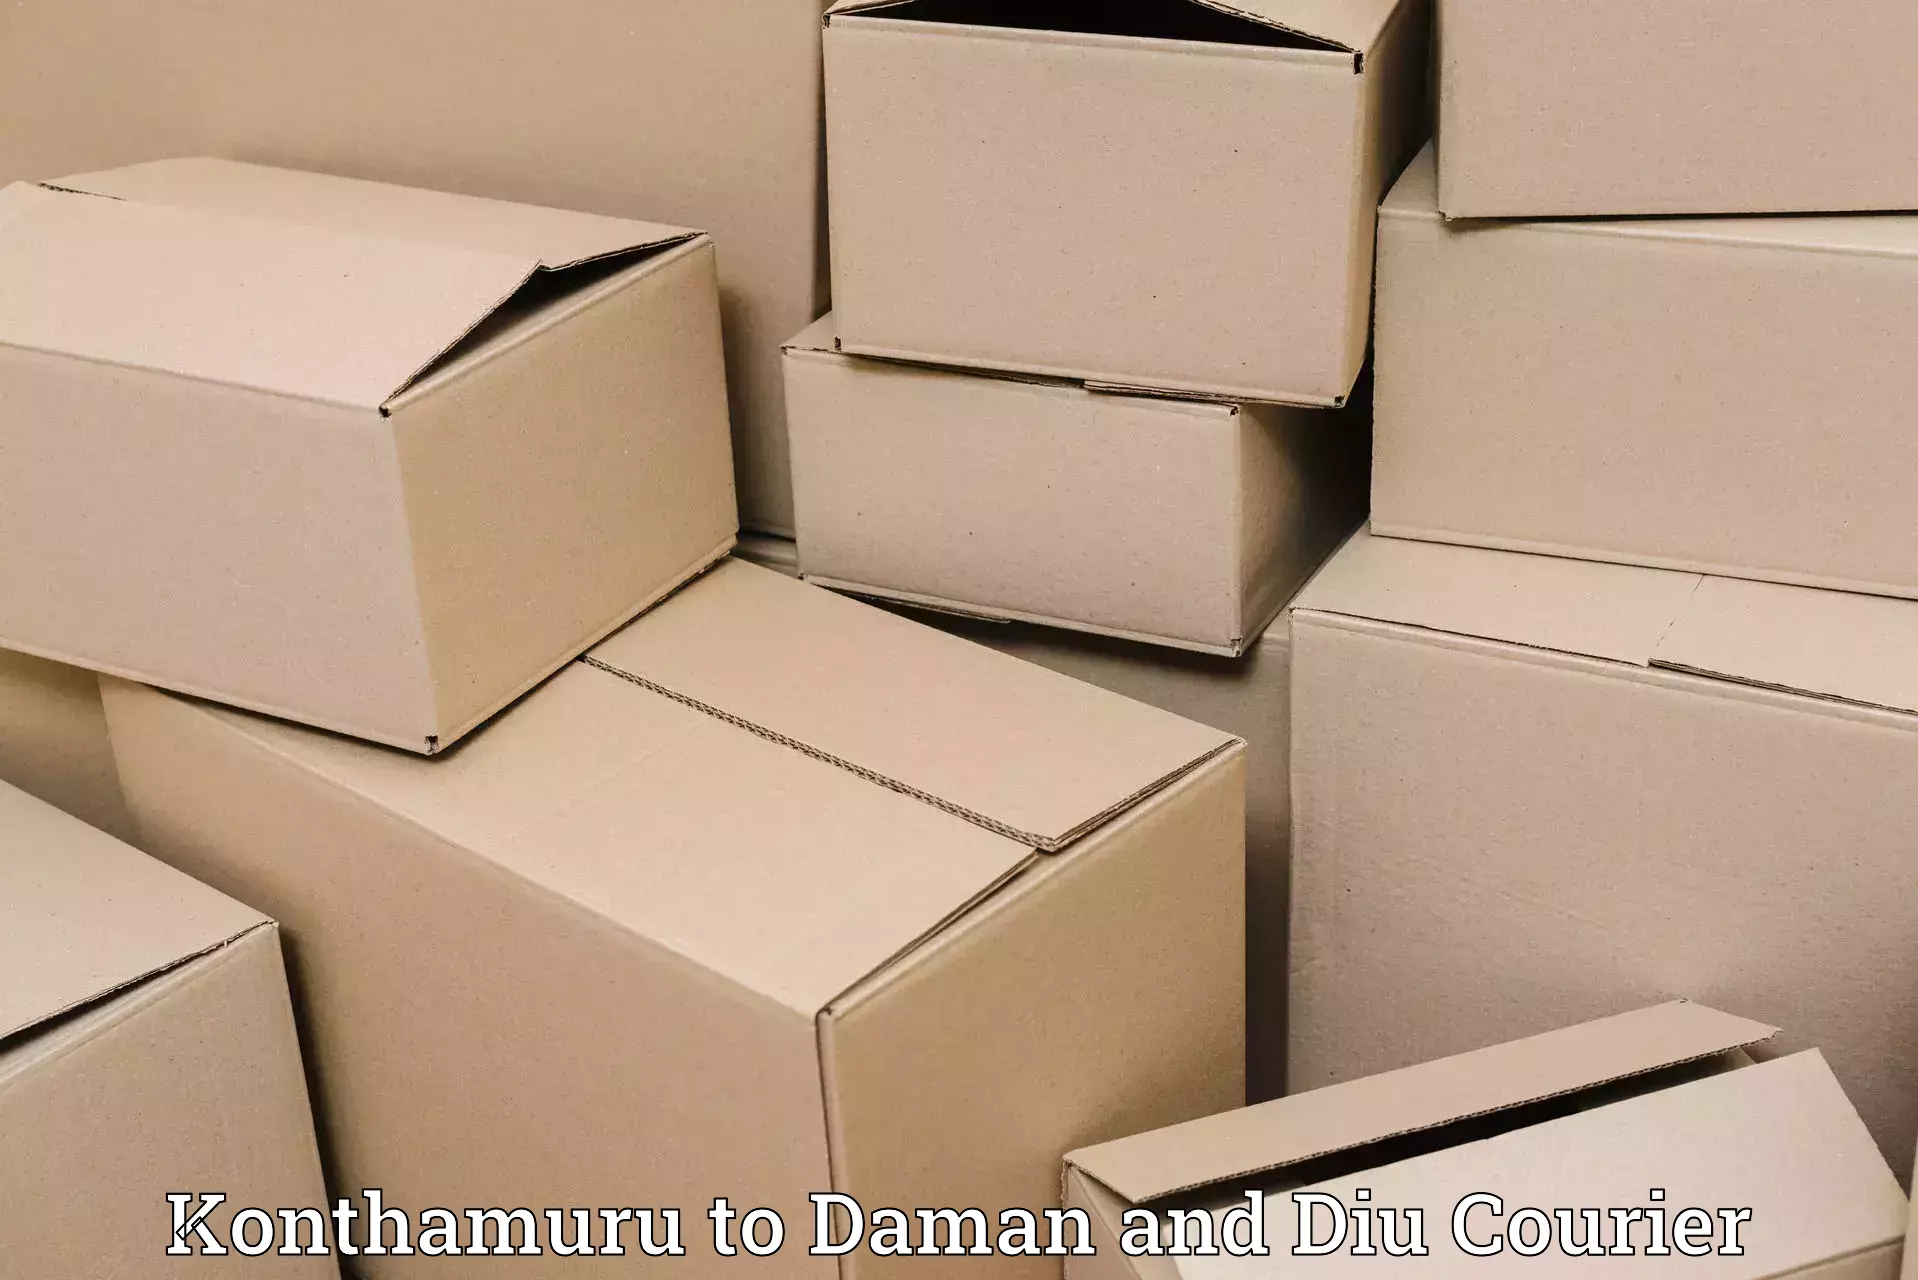 Logistics service provider Konthamuru to Daman